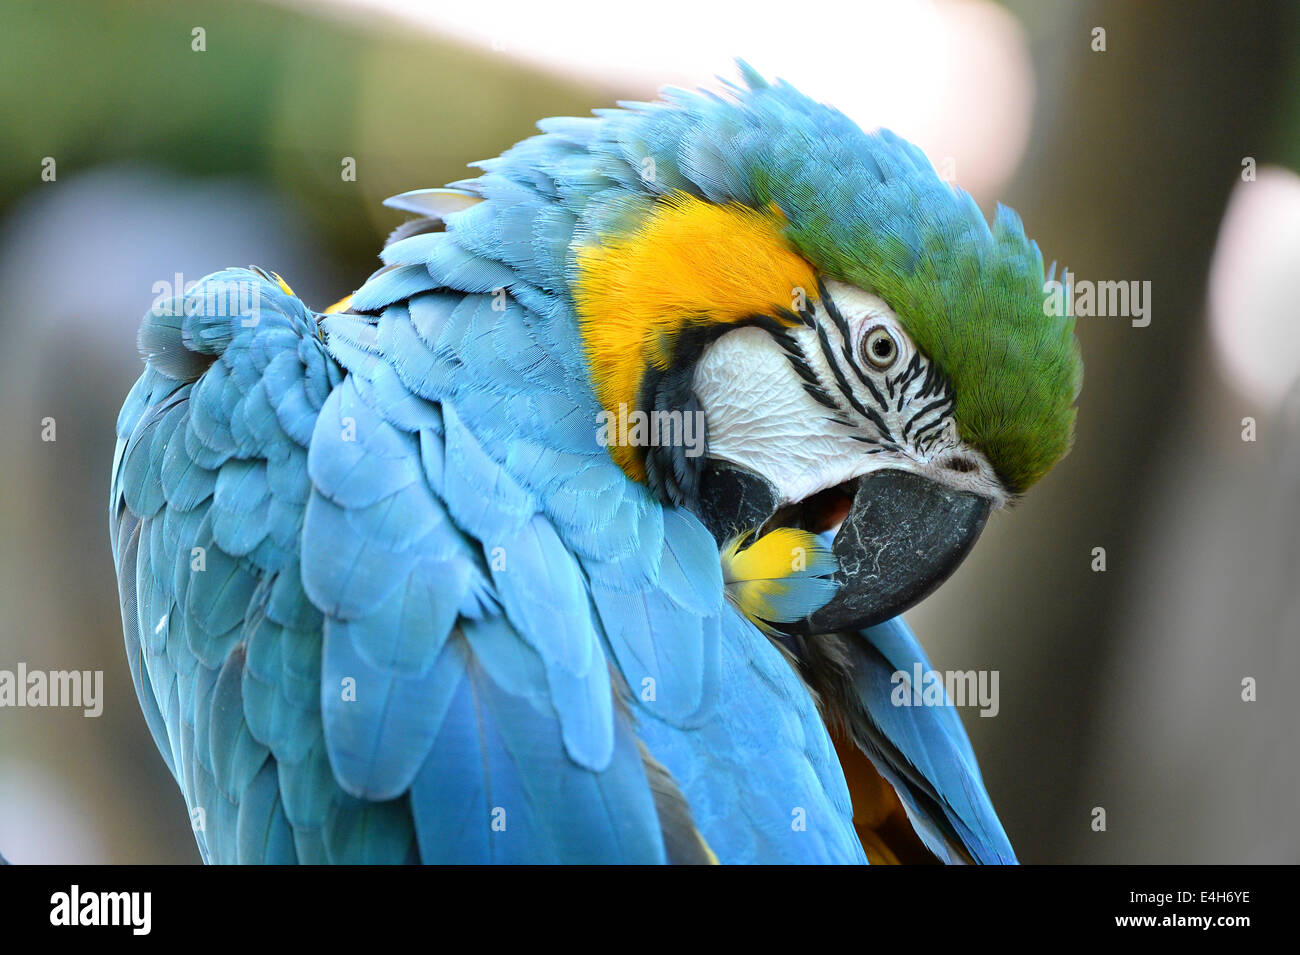 Retrato de guacamayo azul y amarillo plumas peinado Foto de stock